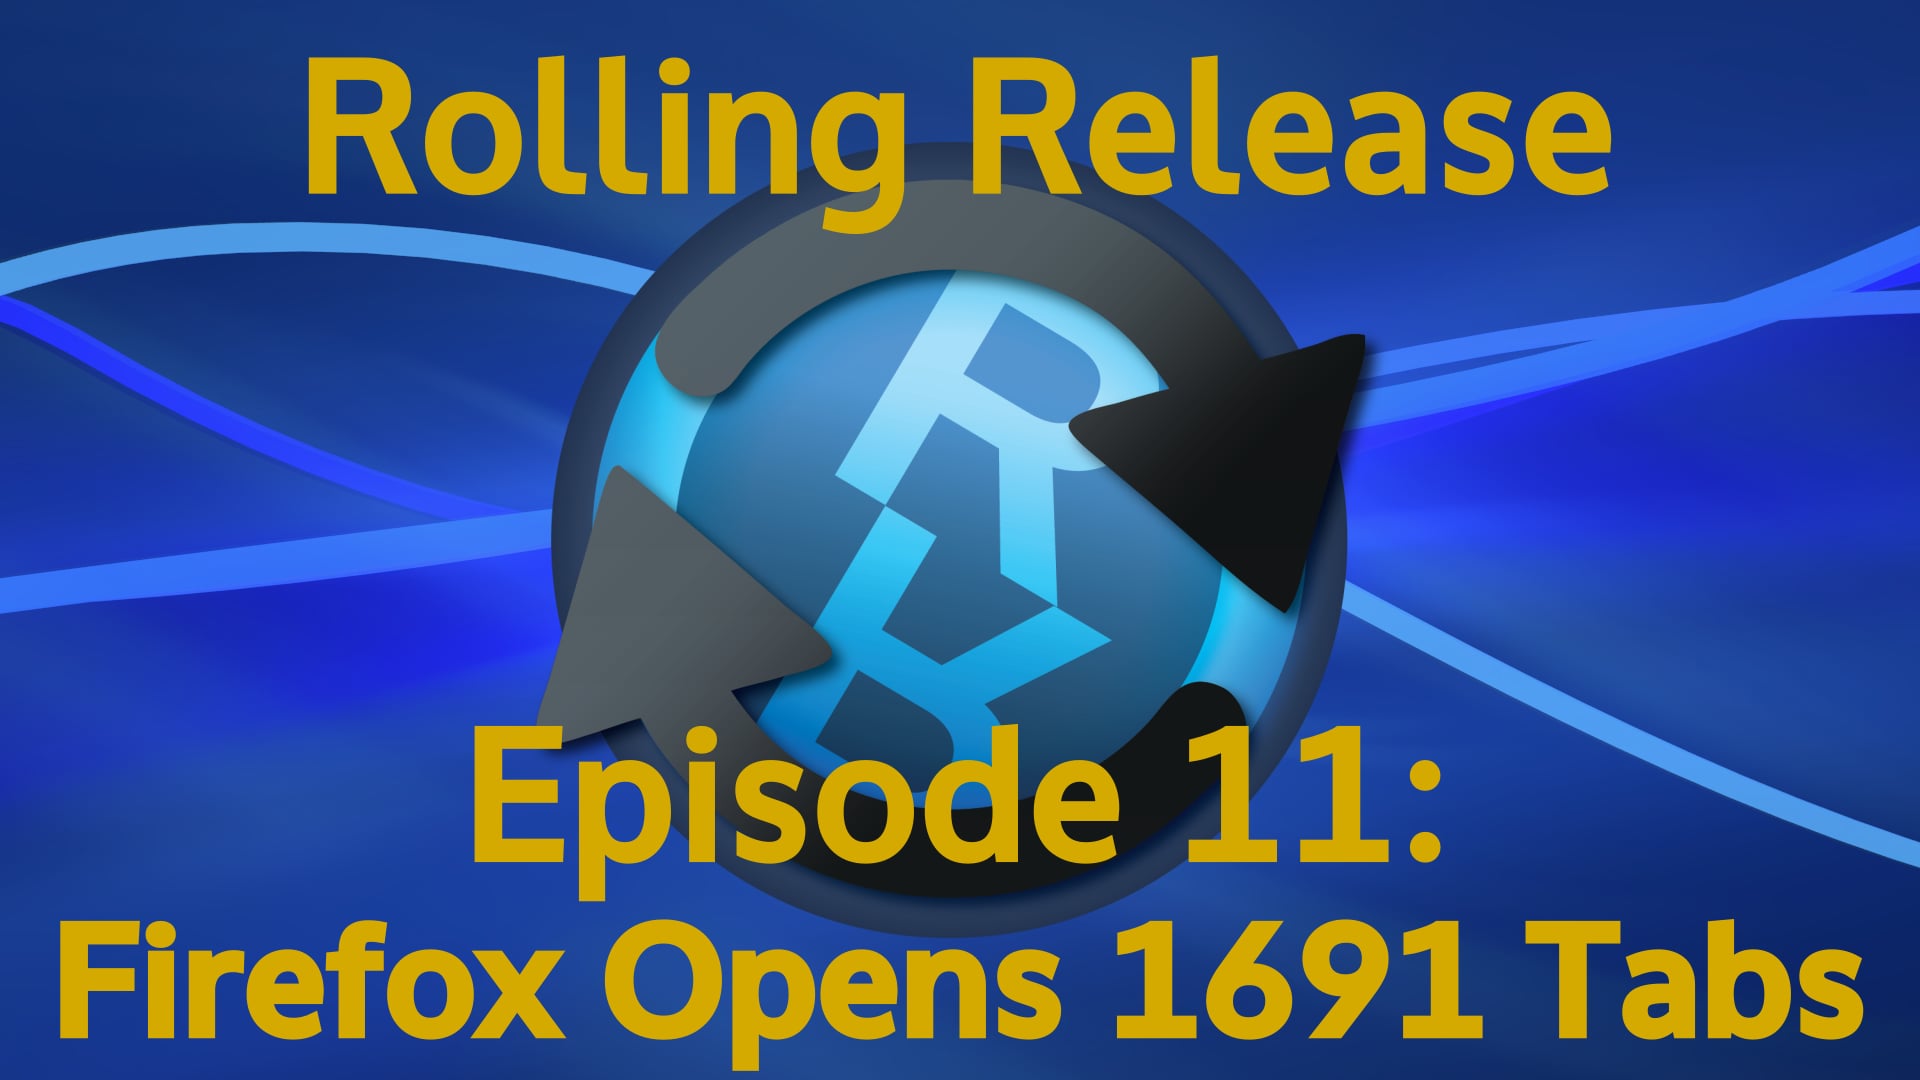 Firefox Opens 1691 Tabs - Rolling Release #11